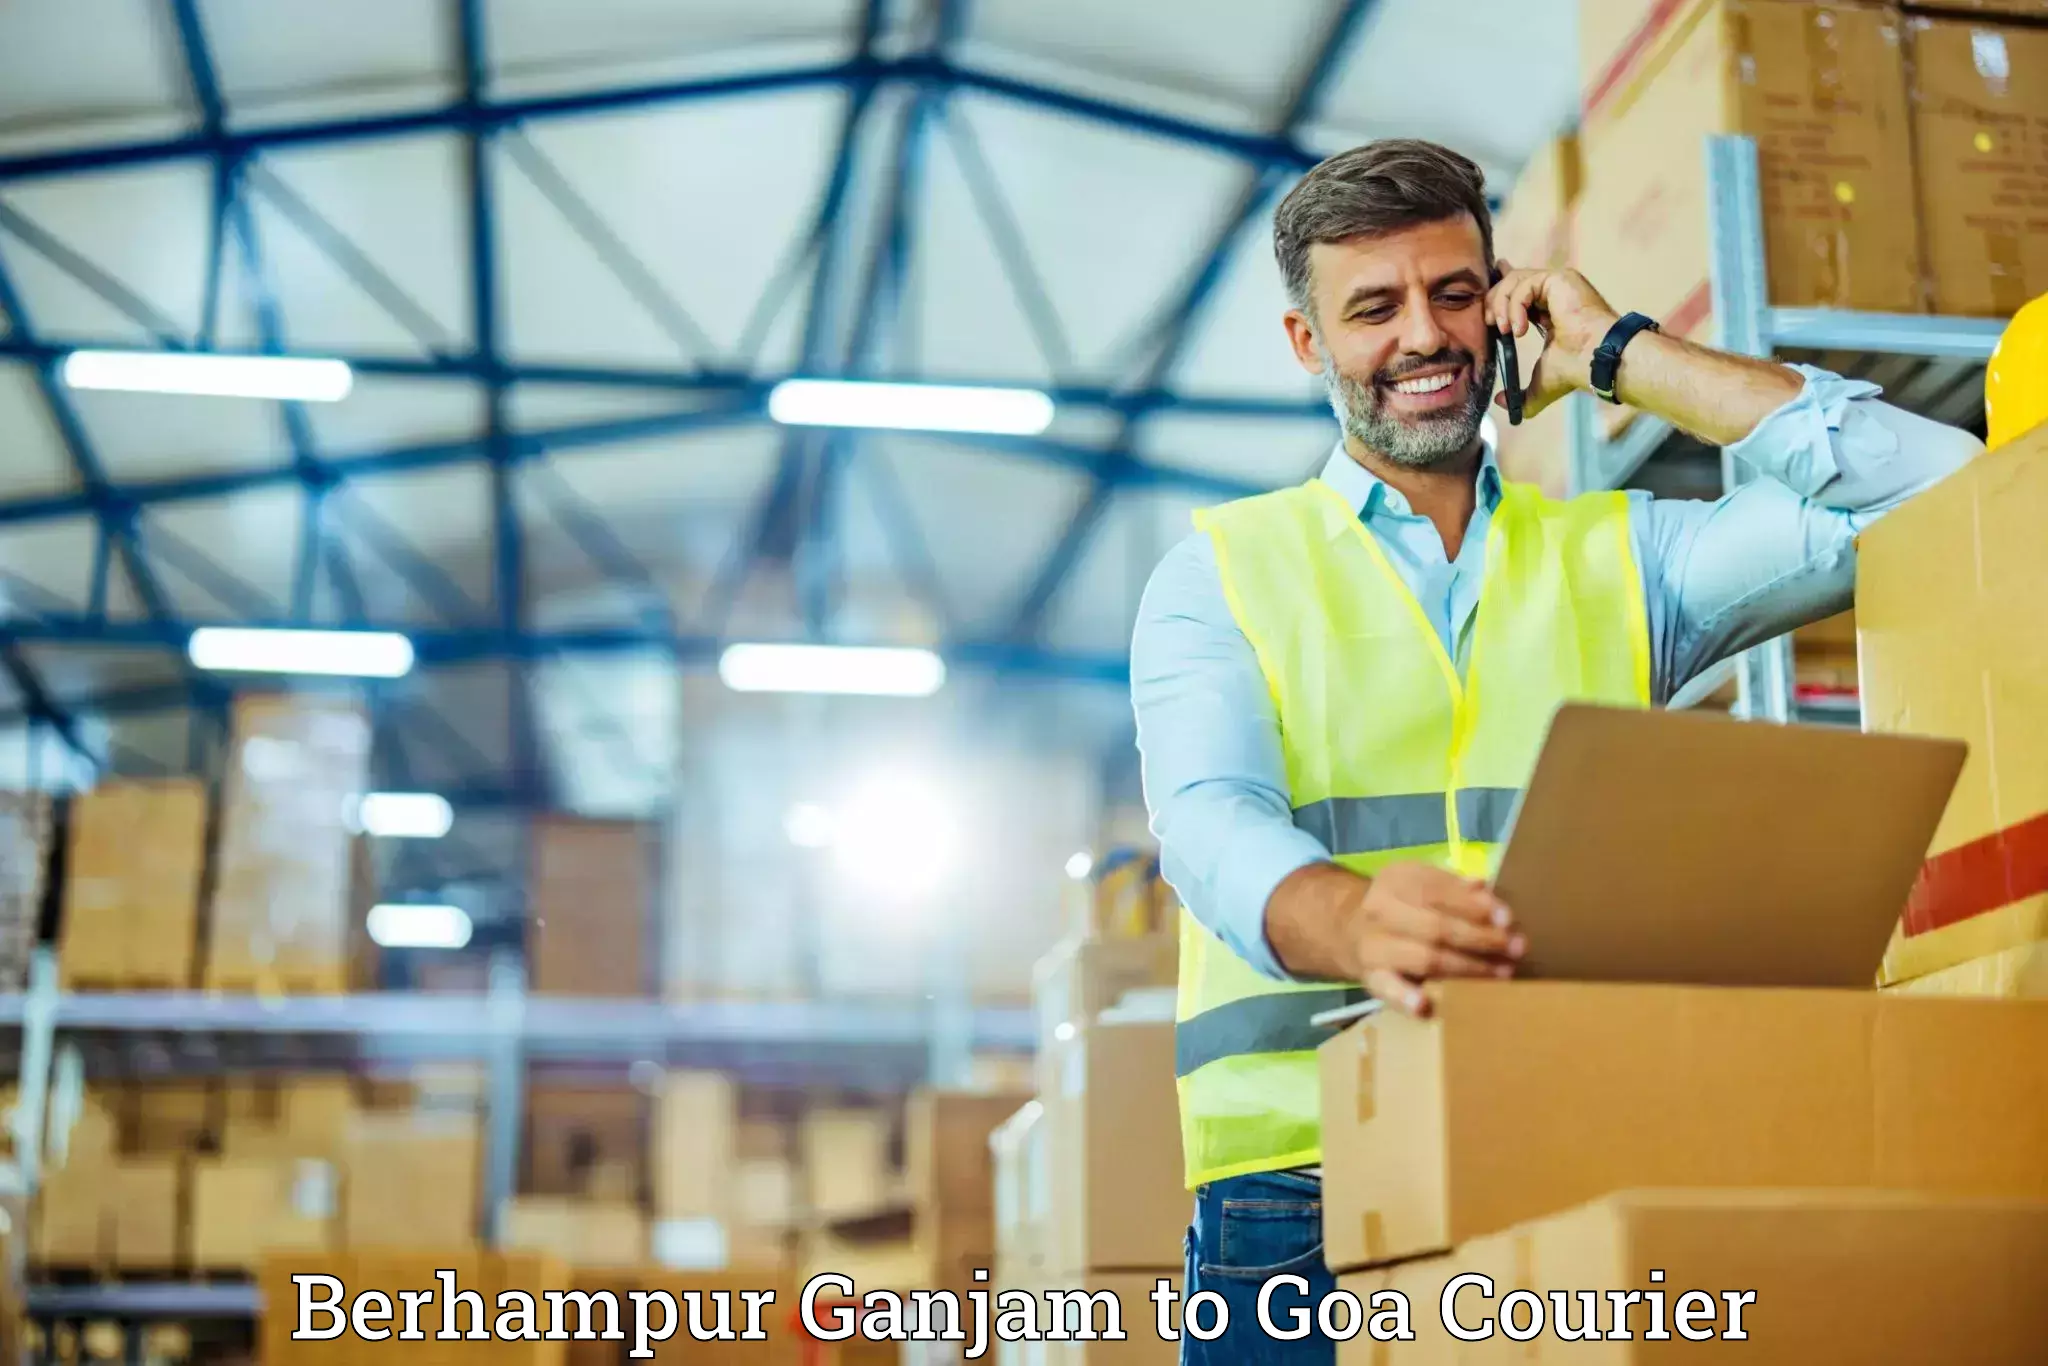 Furniture transport company Berhampur Ganjam to Margao